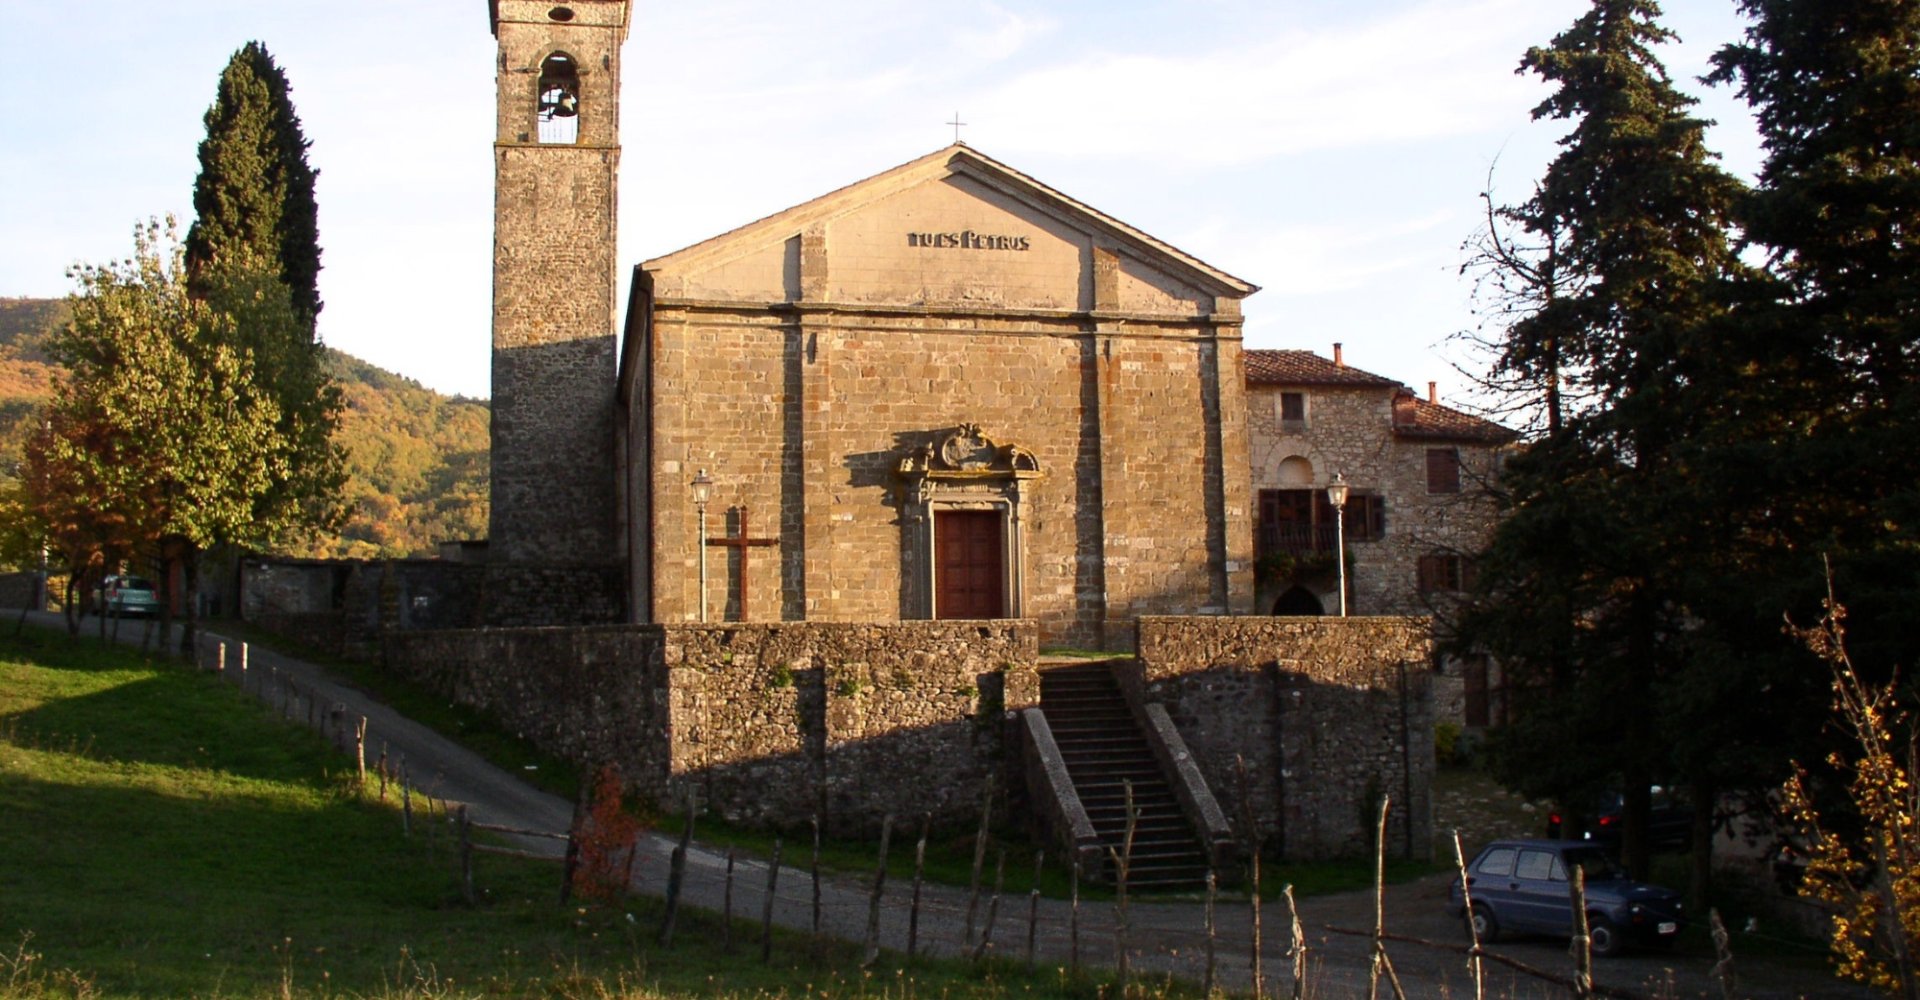 Parish of Offiano in Lunigiana